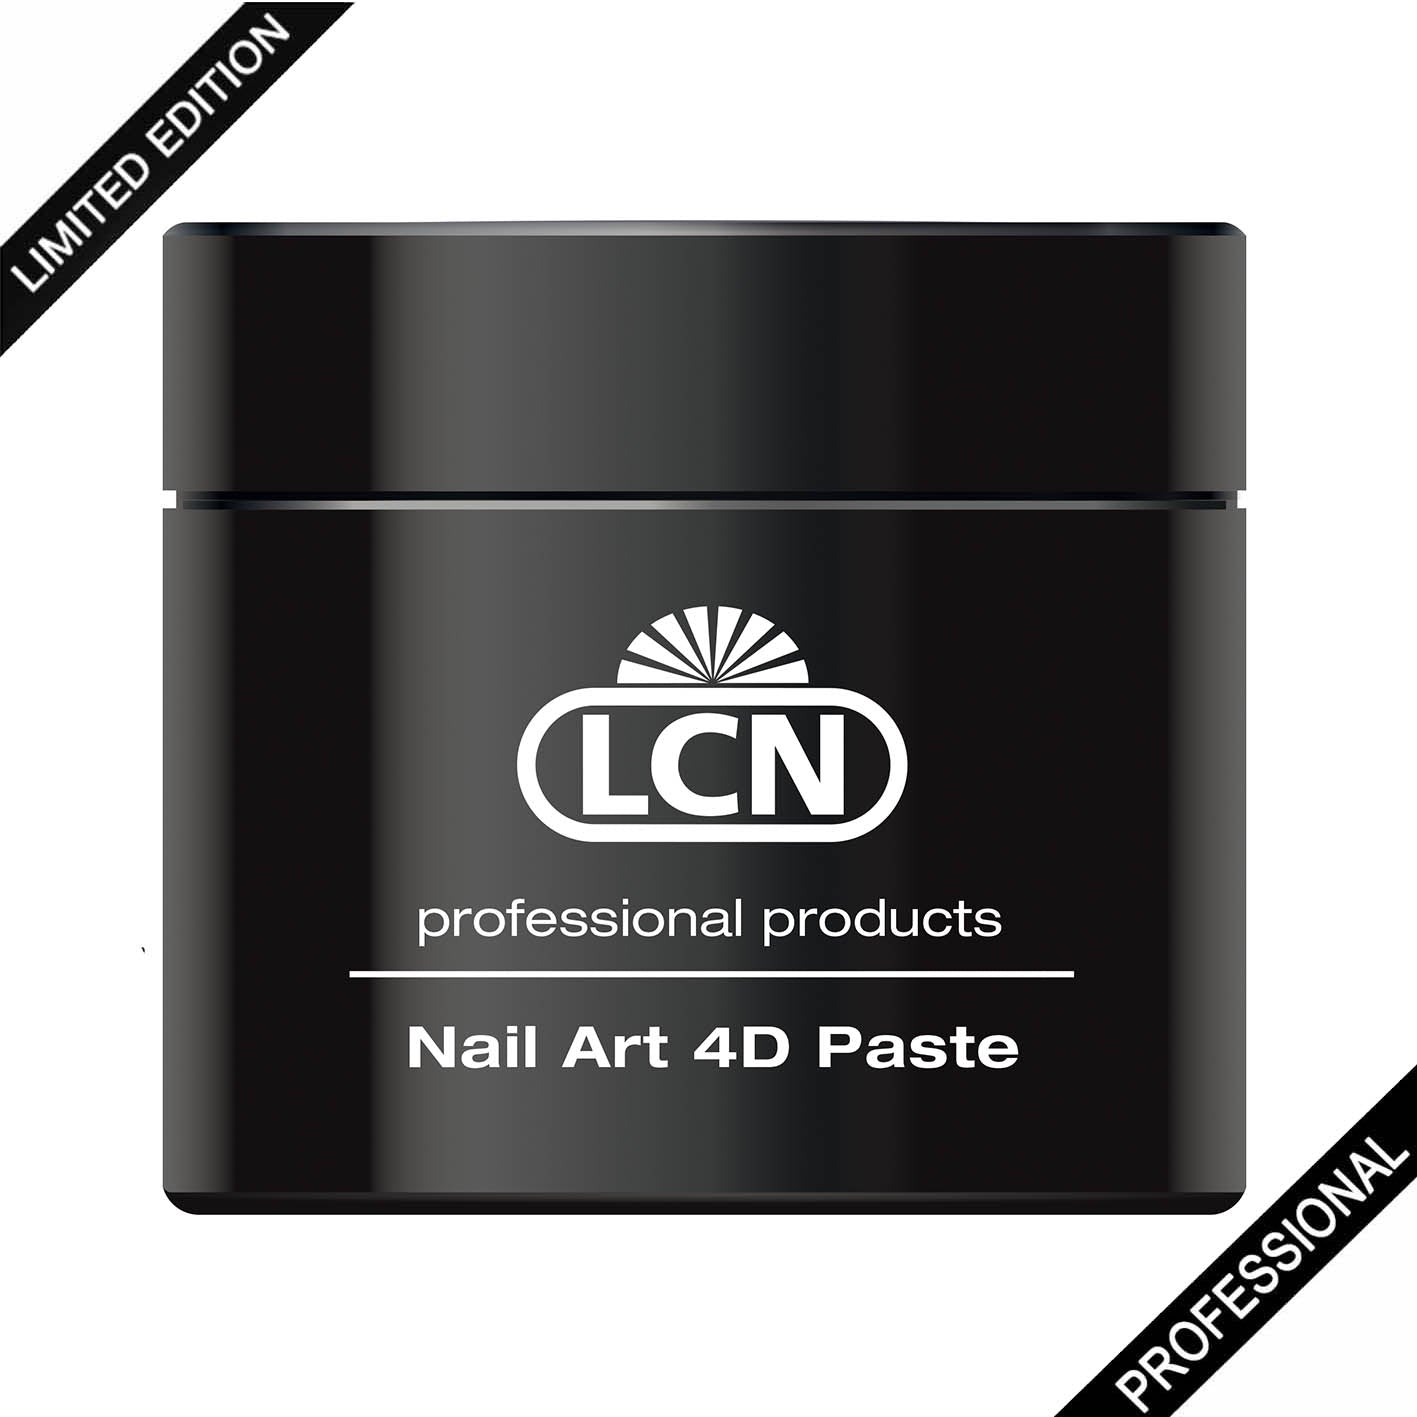 LCN Nail Art 4D Paste, 5ml